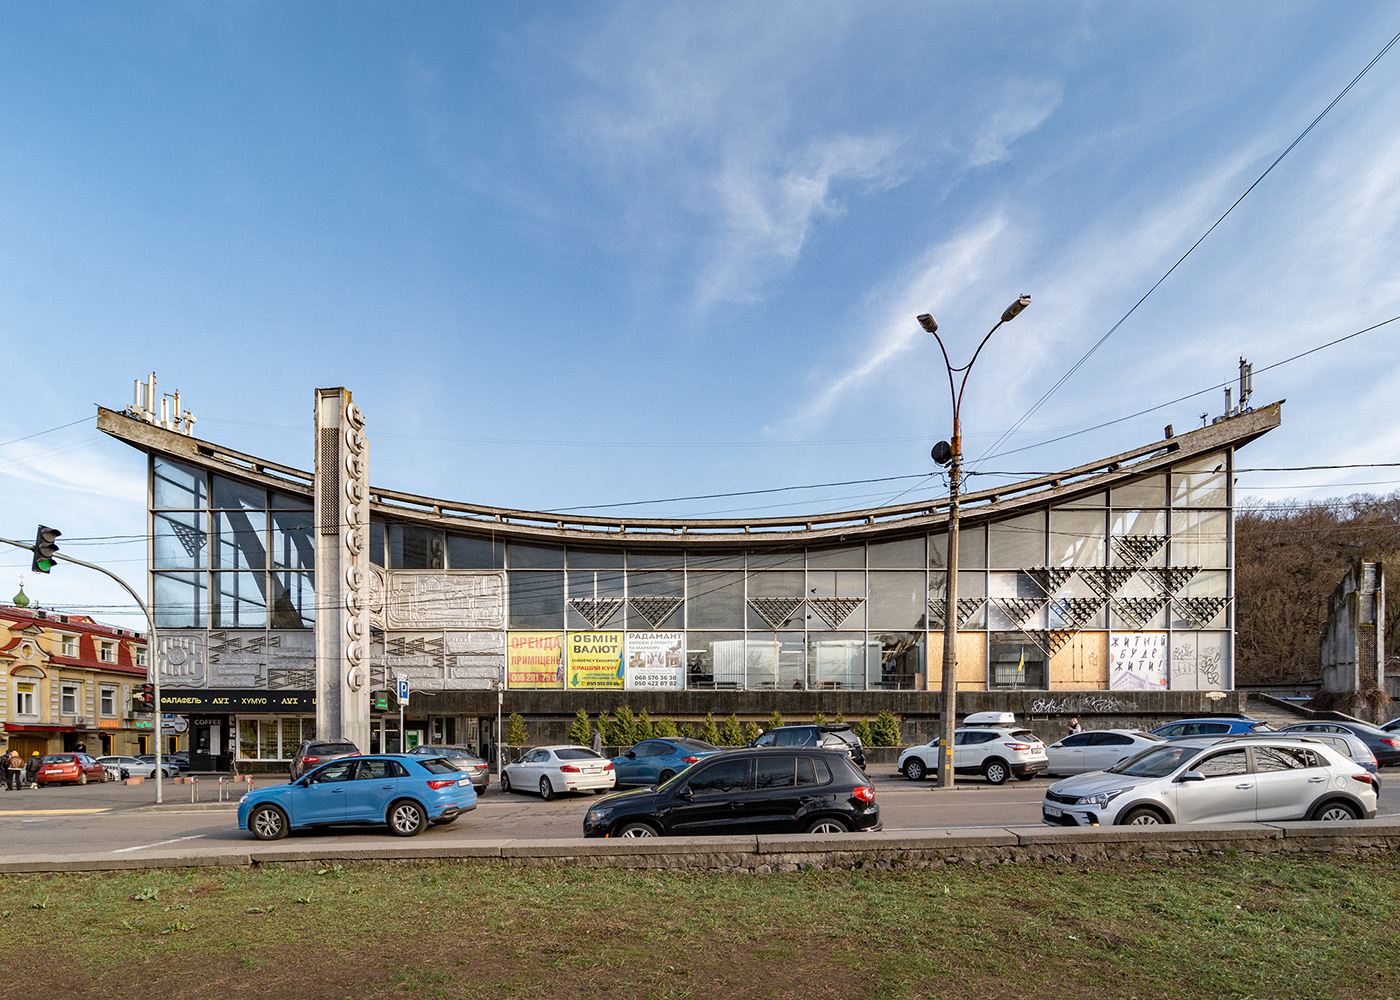 ukraine Kyiv building modernism Brutalism architecture Architecture Photography concrete BrutalistArchitecture socmodernism